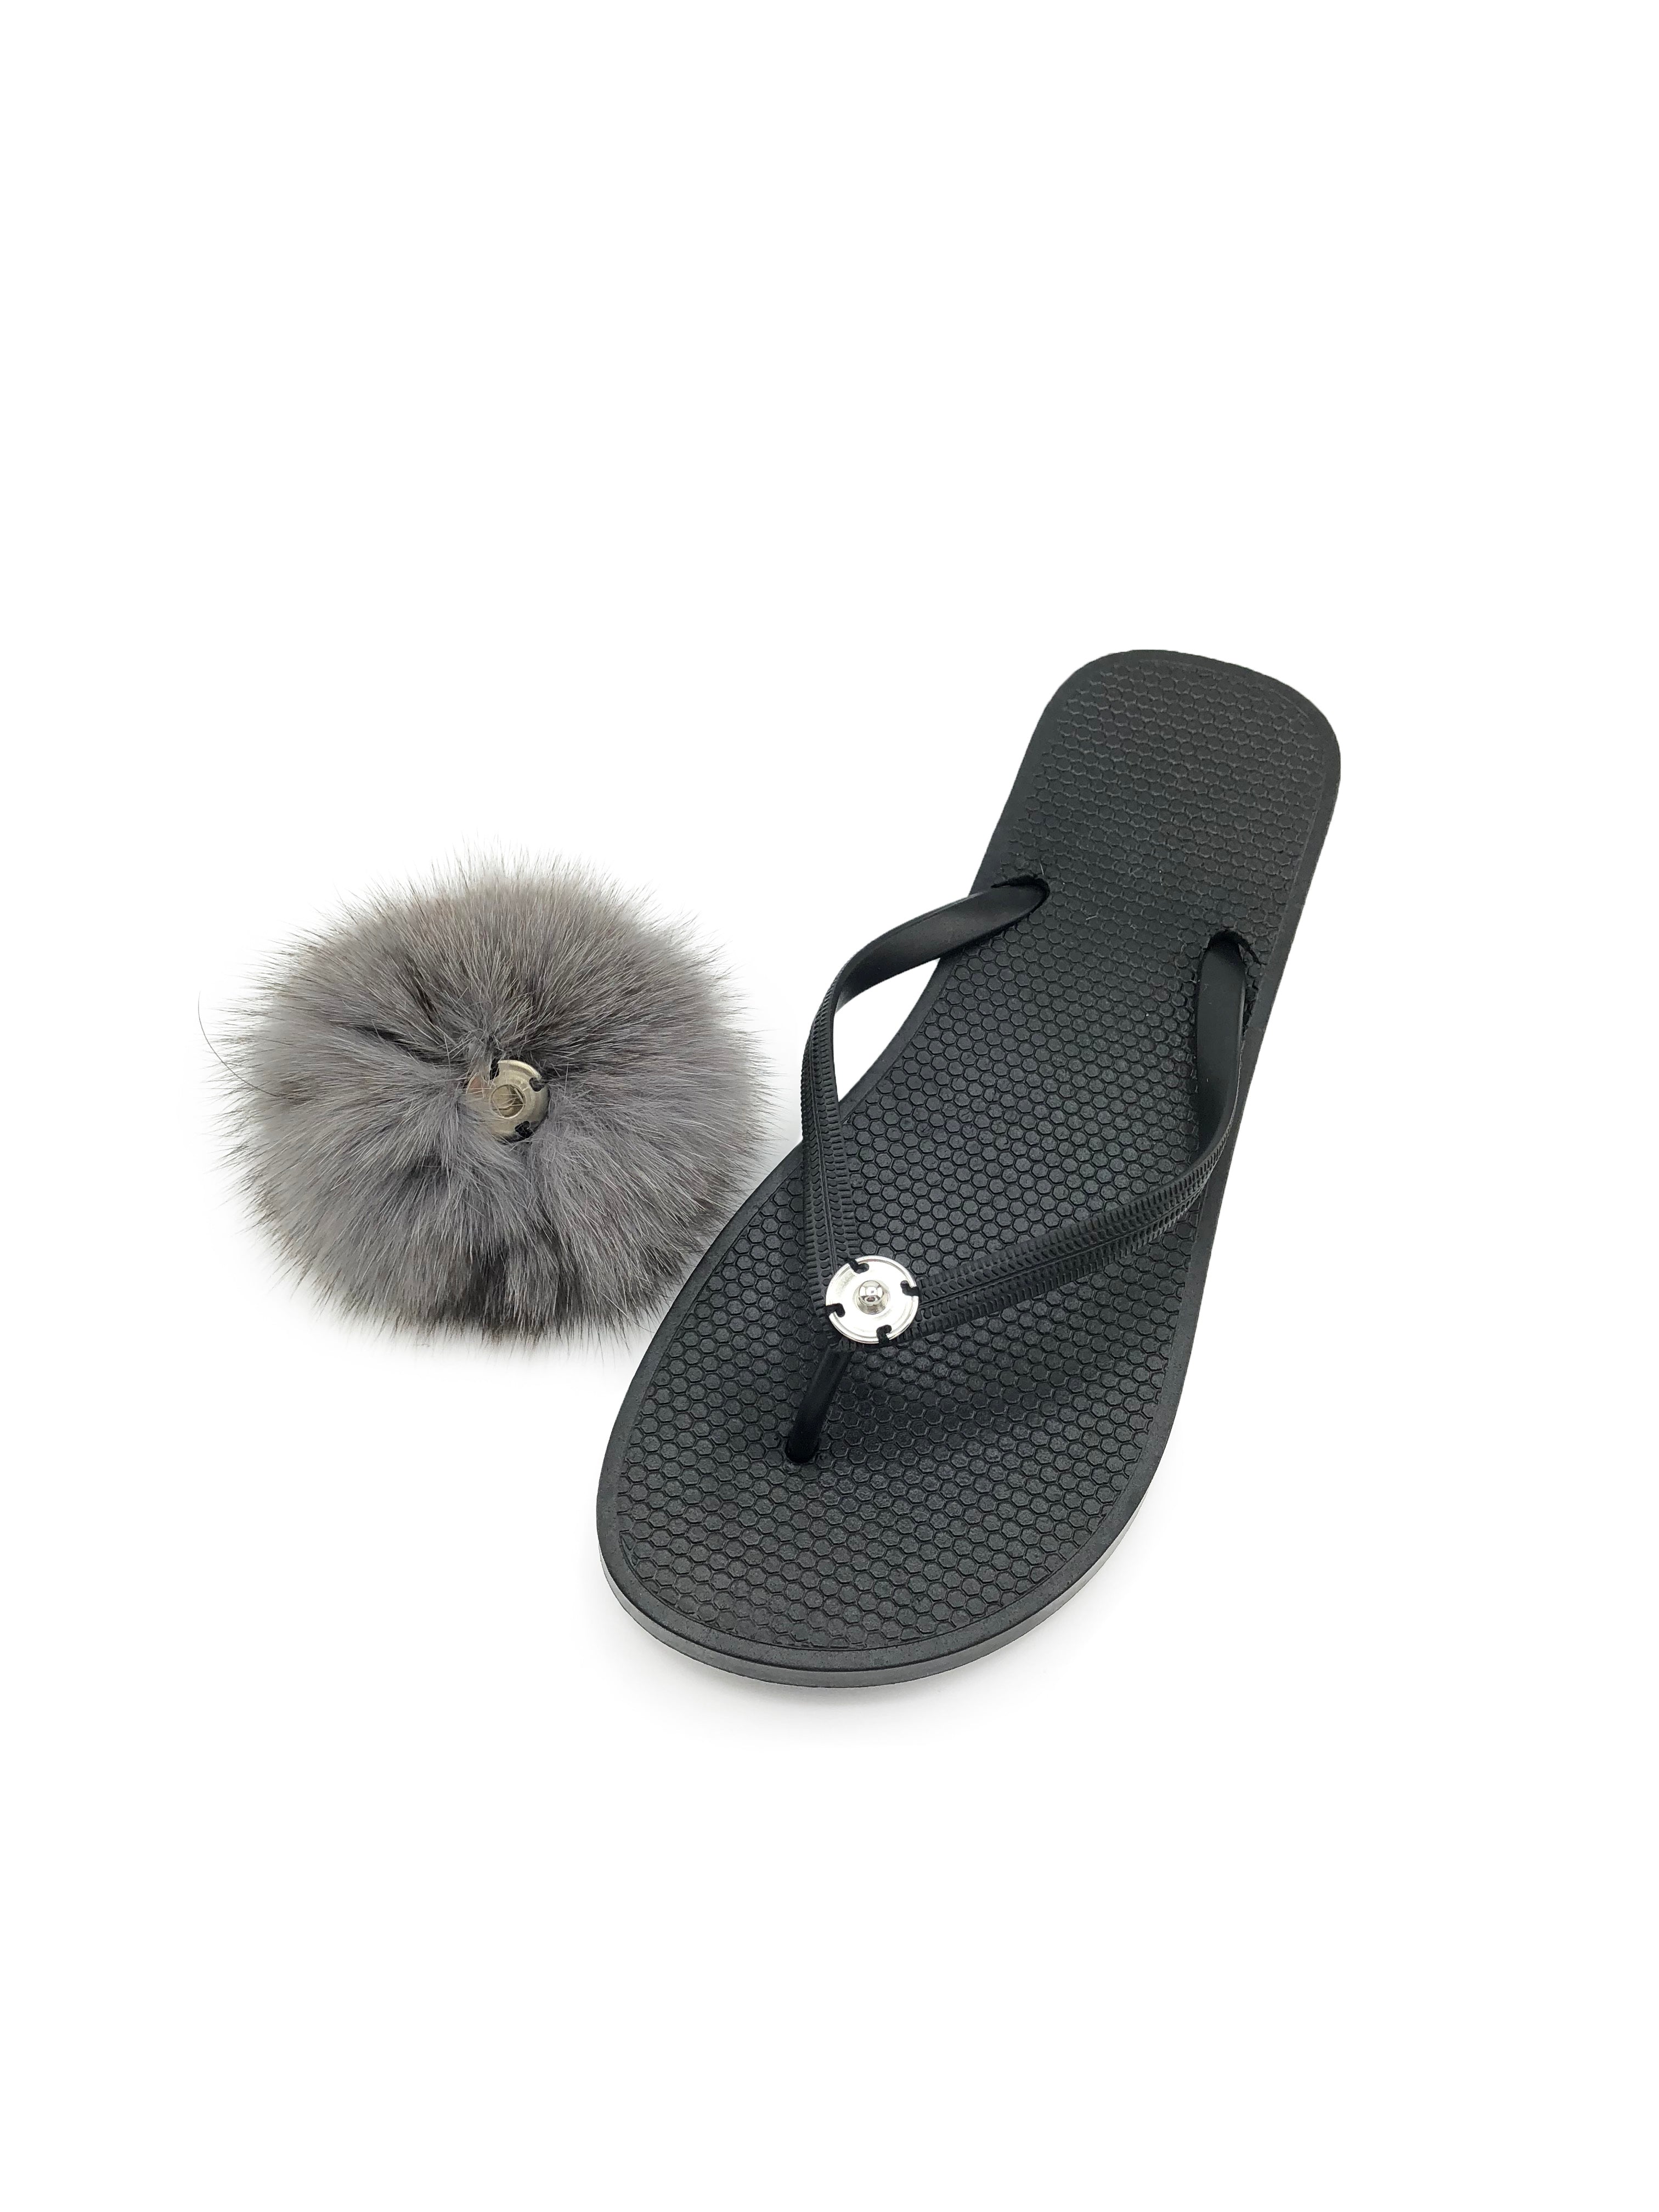 flip flops with fur pom pom